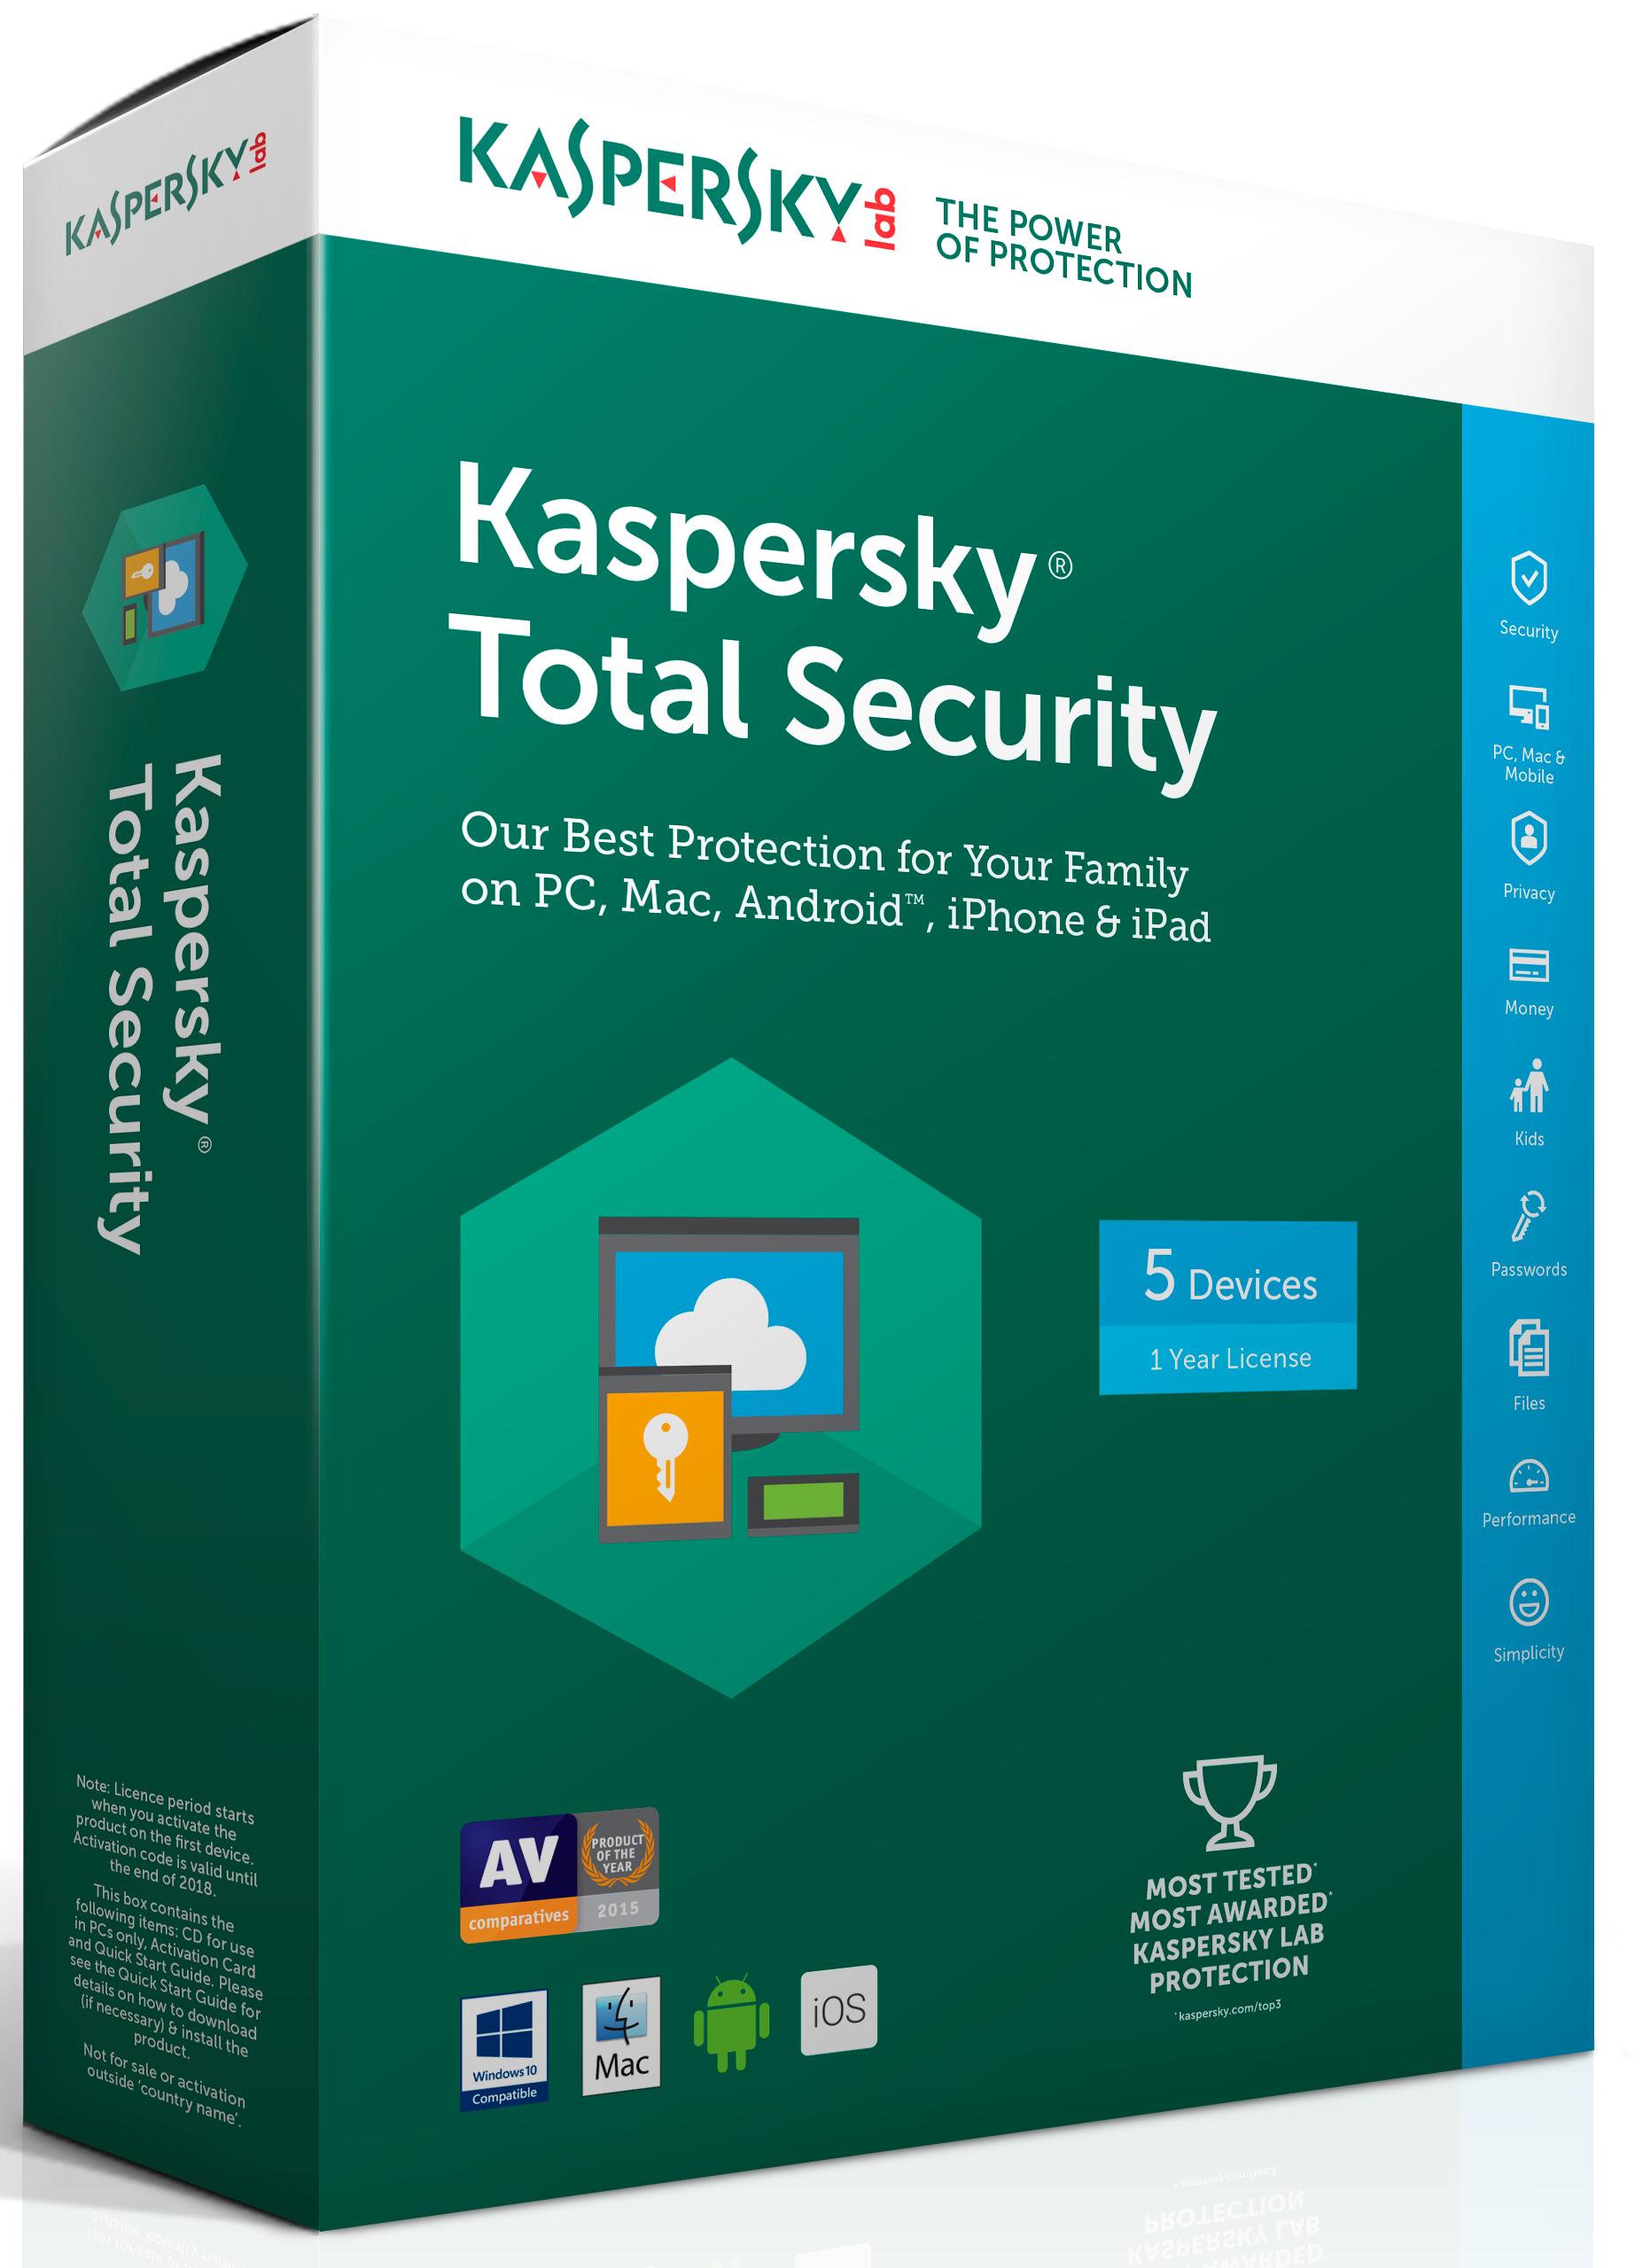 Kaspersky internet security 17.0 download